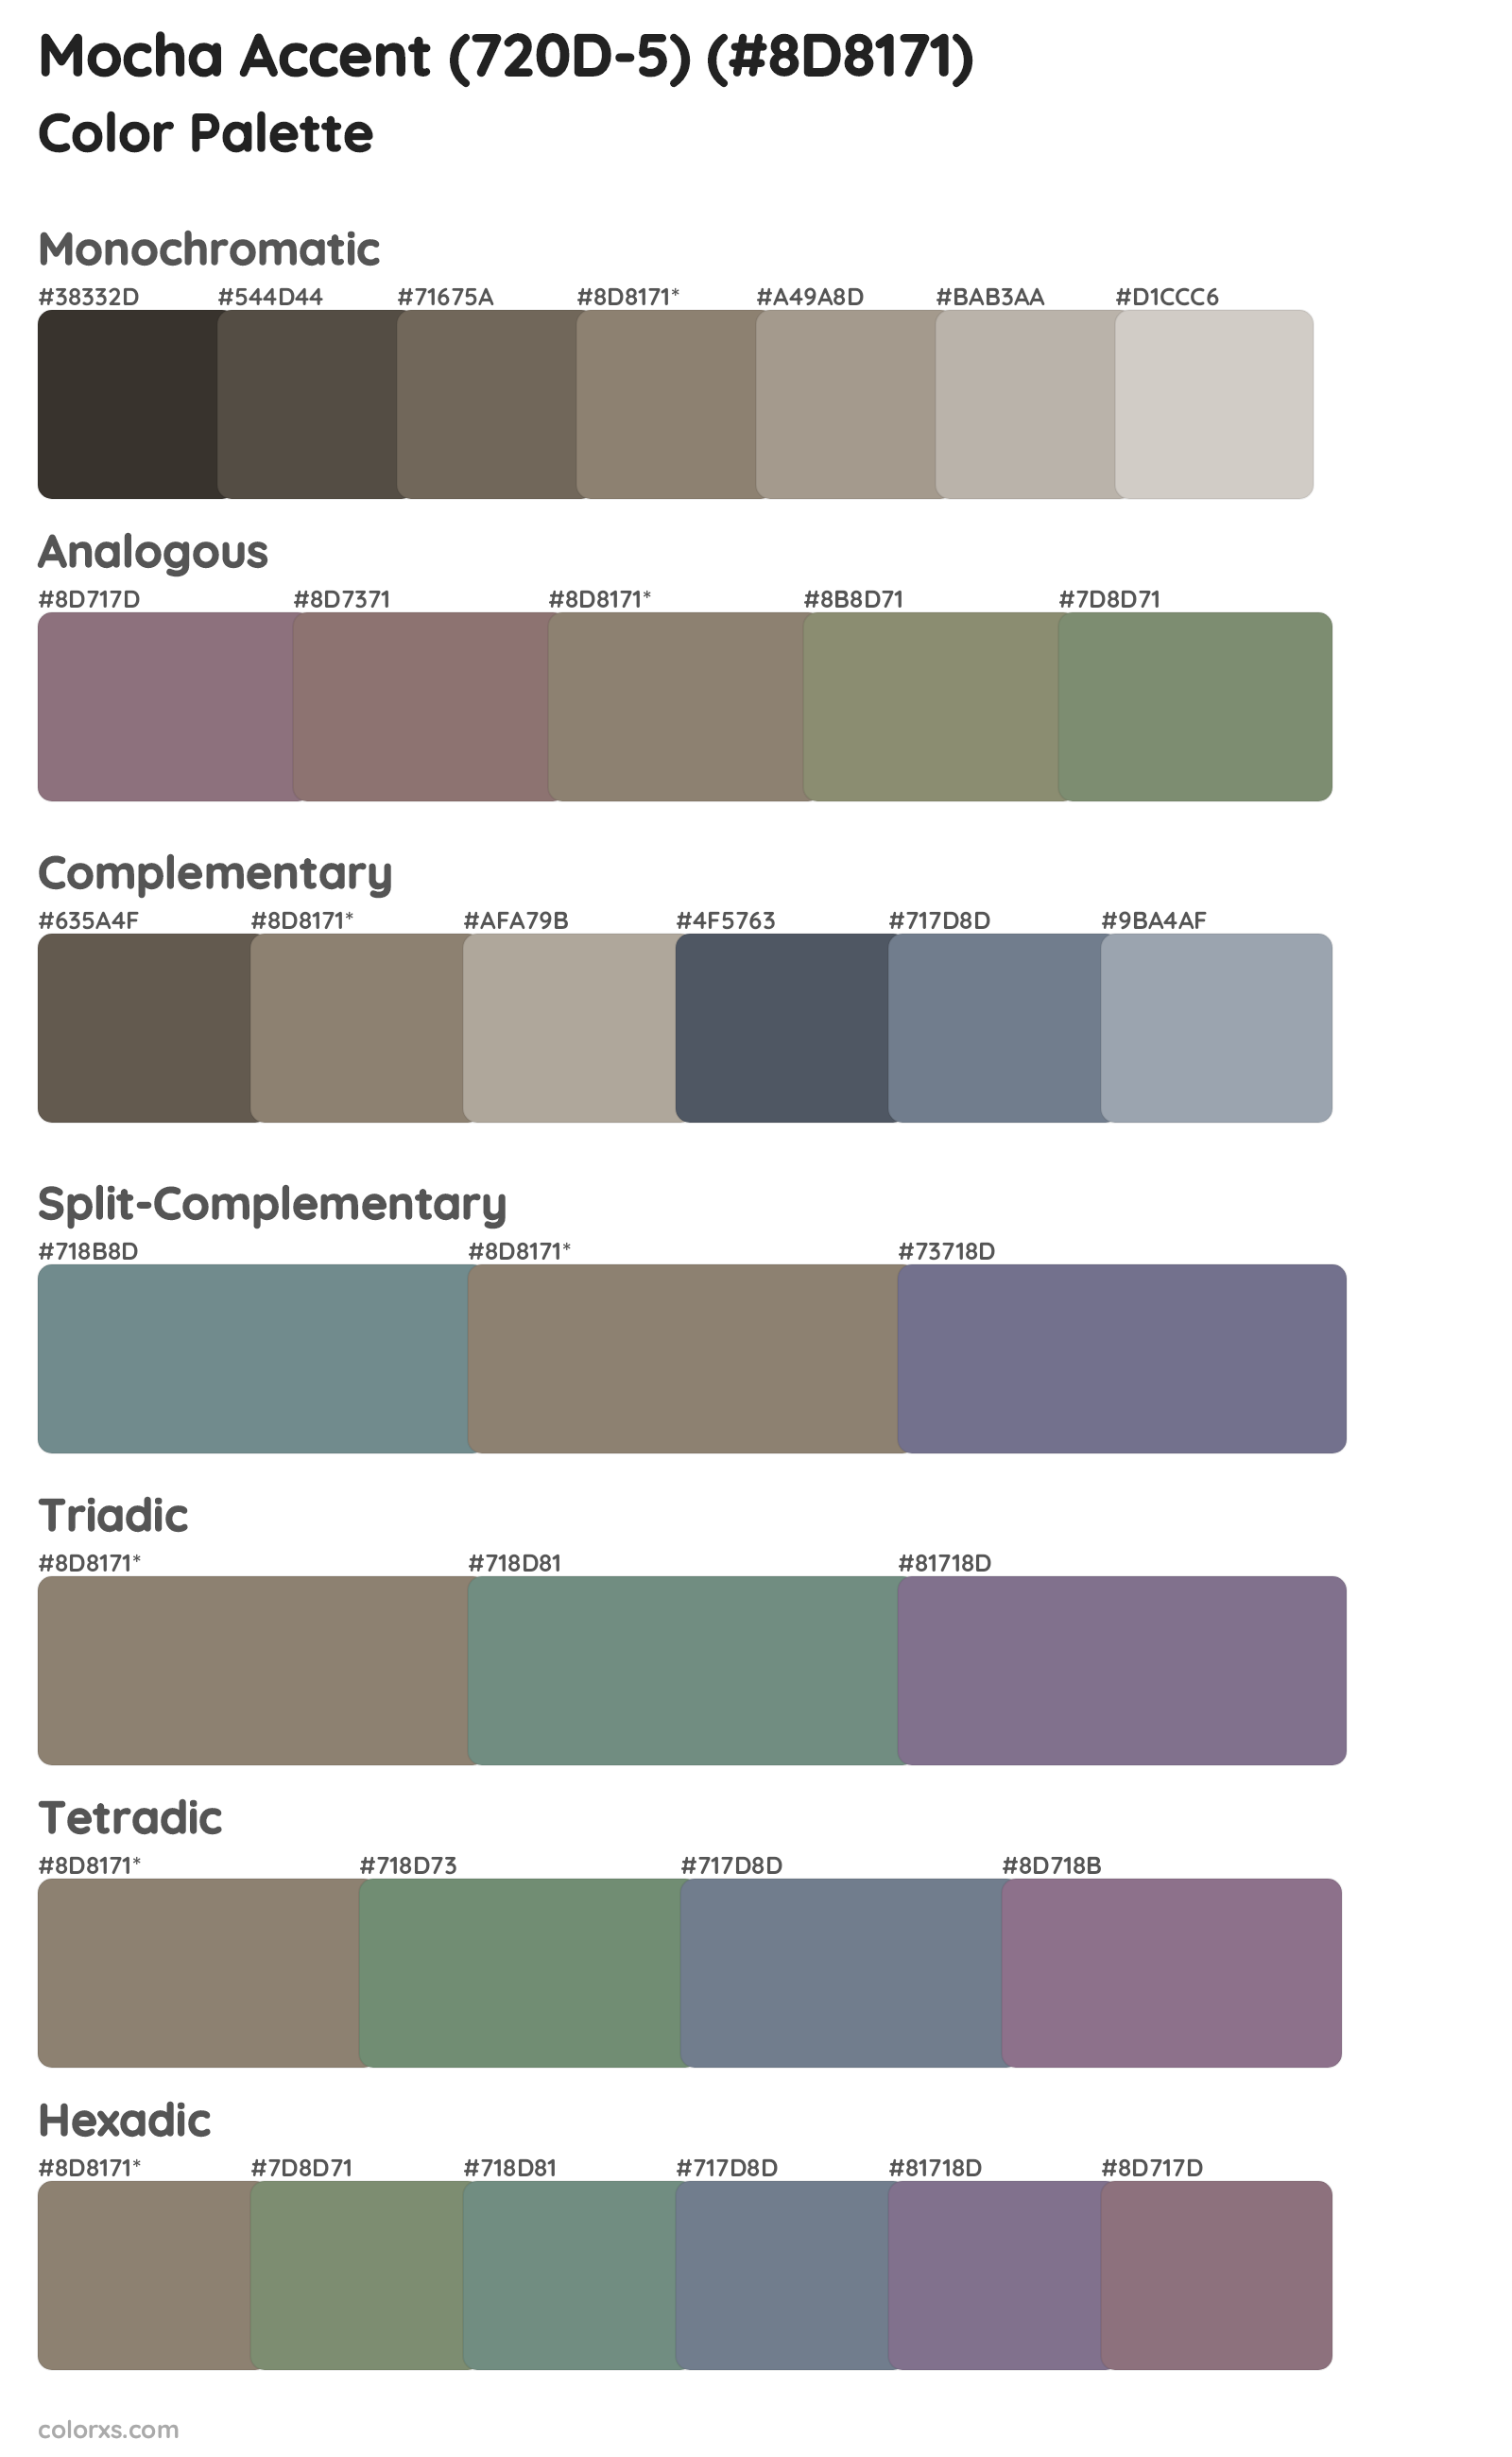 Mocha Accent (720D-5) Color Scheme Palettes